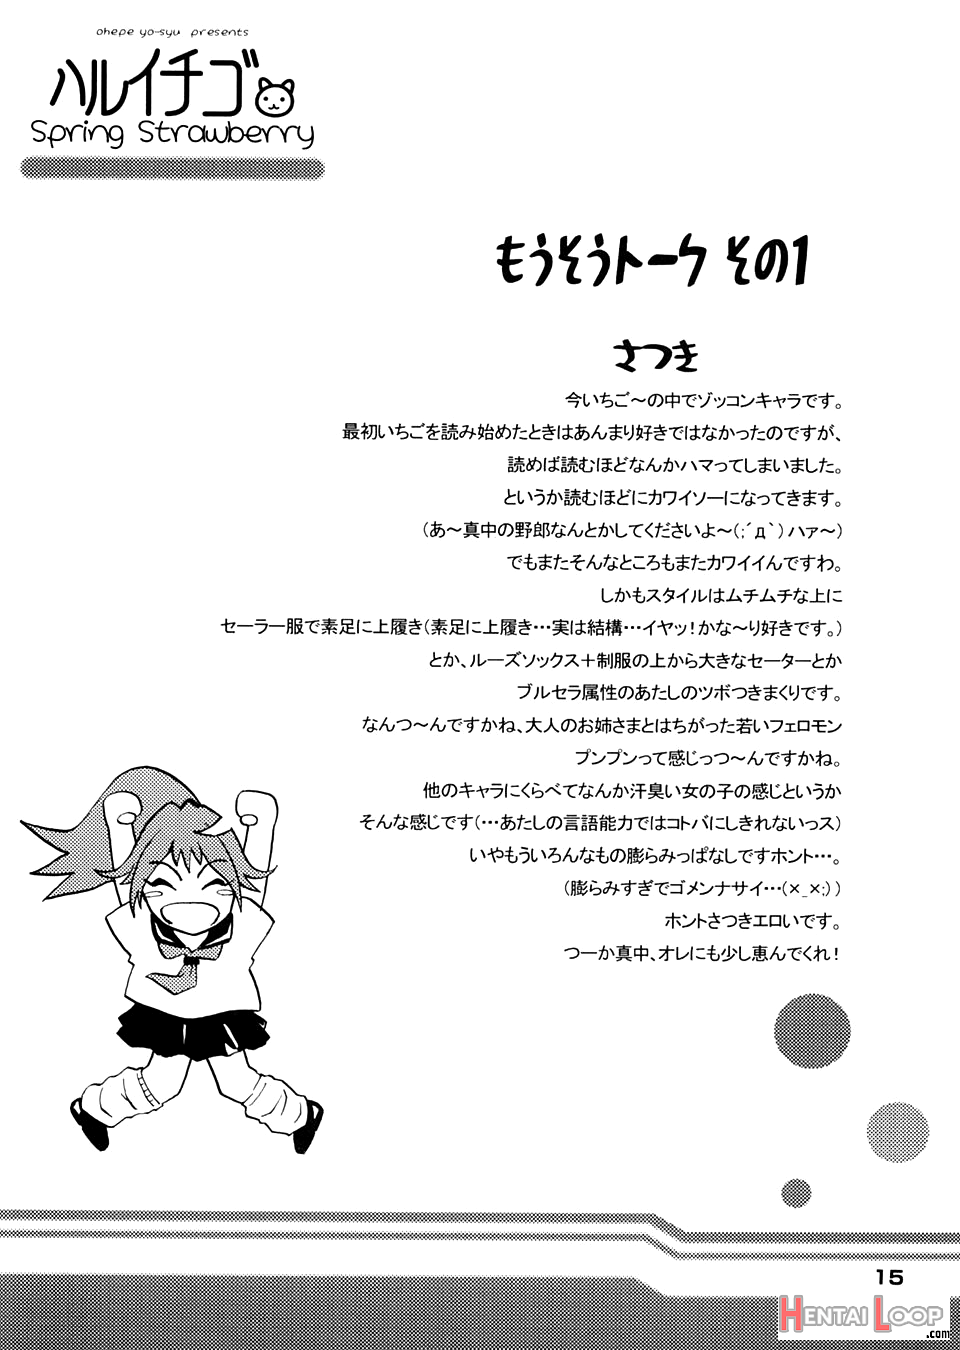 Haru Ichigo page 13